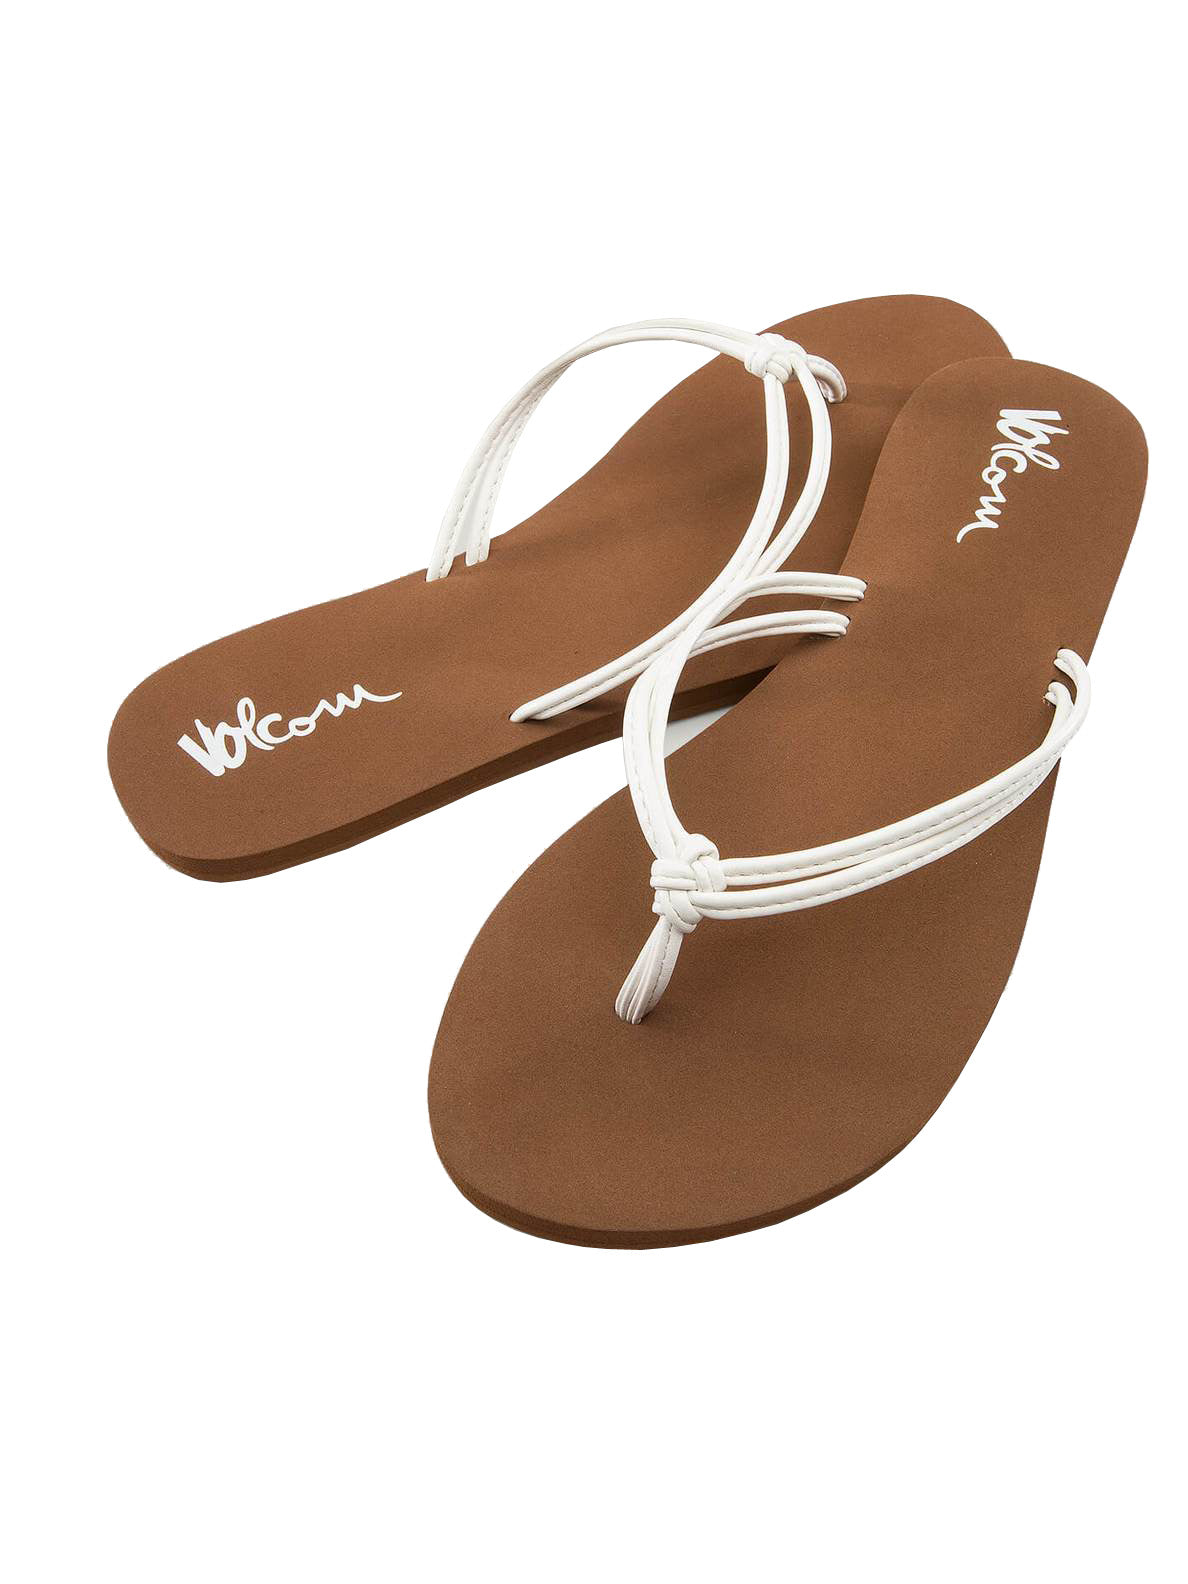 Volcom Forever and Ever 2 Womens Sandal WHT-White 10